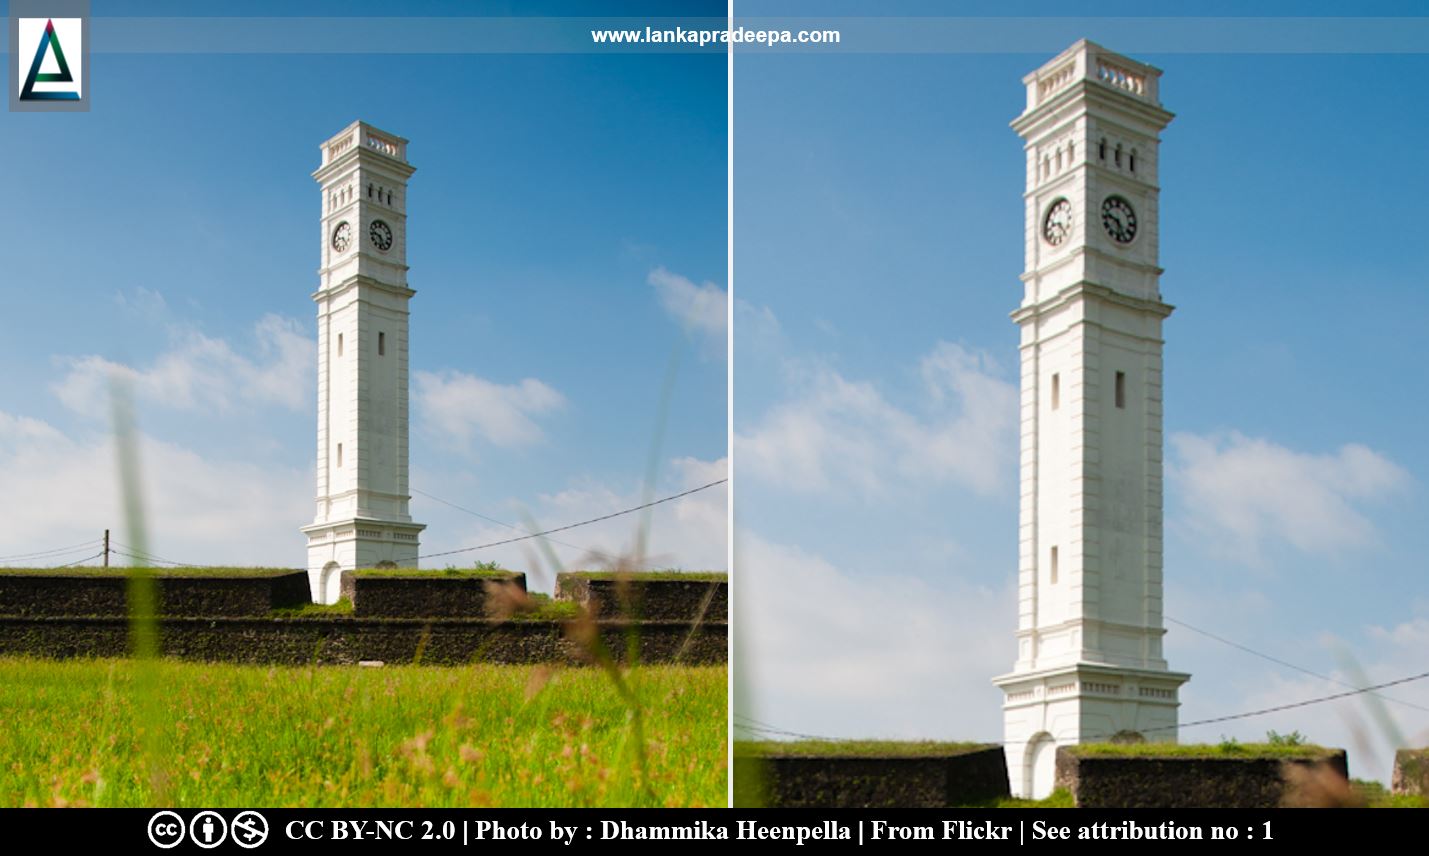 Matara Clock Tower